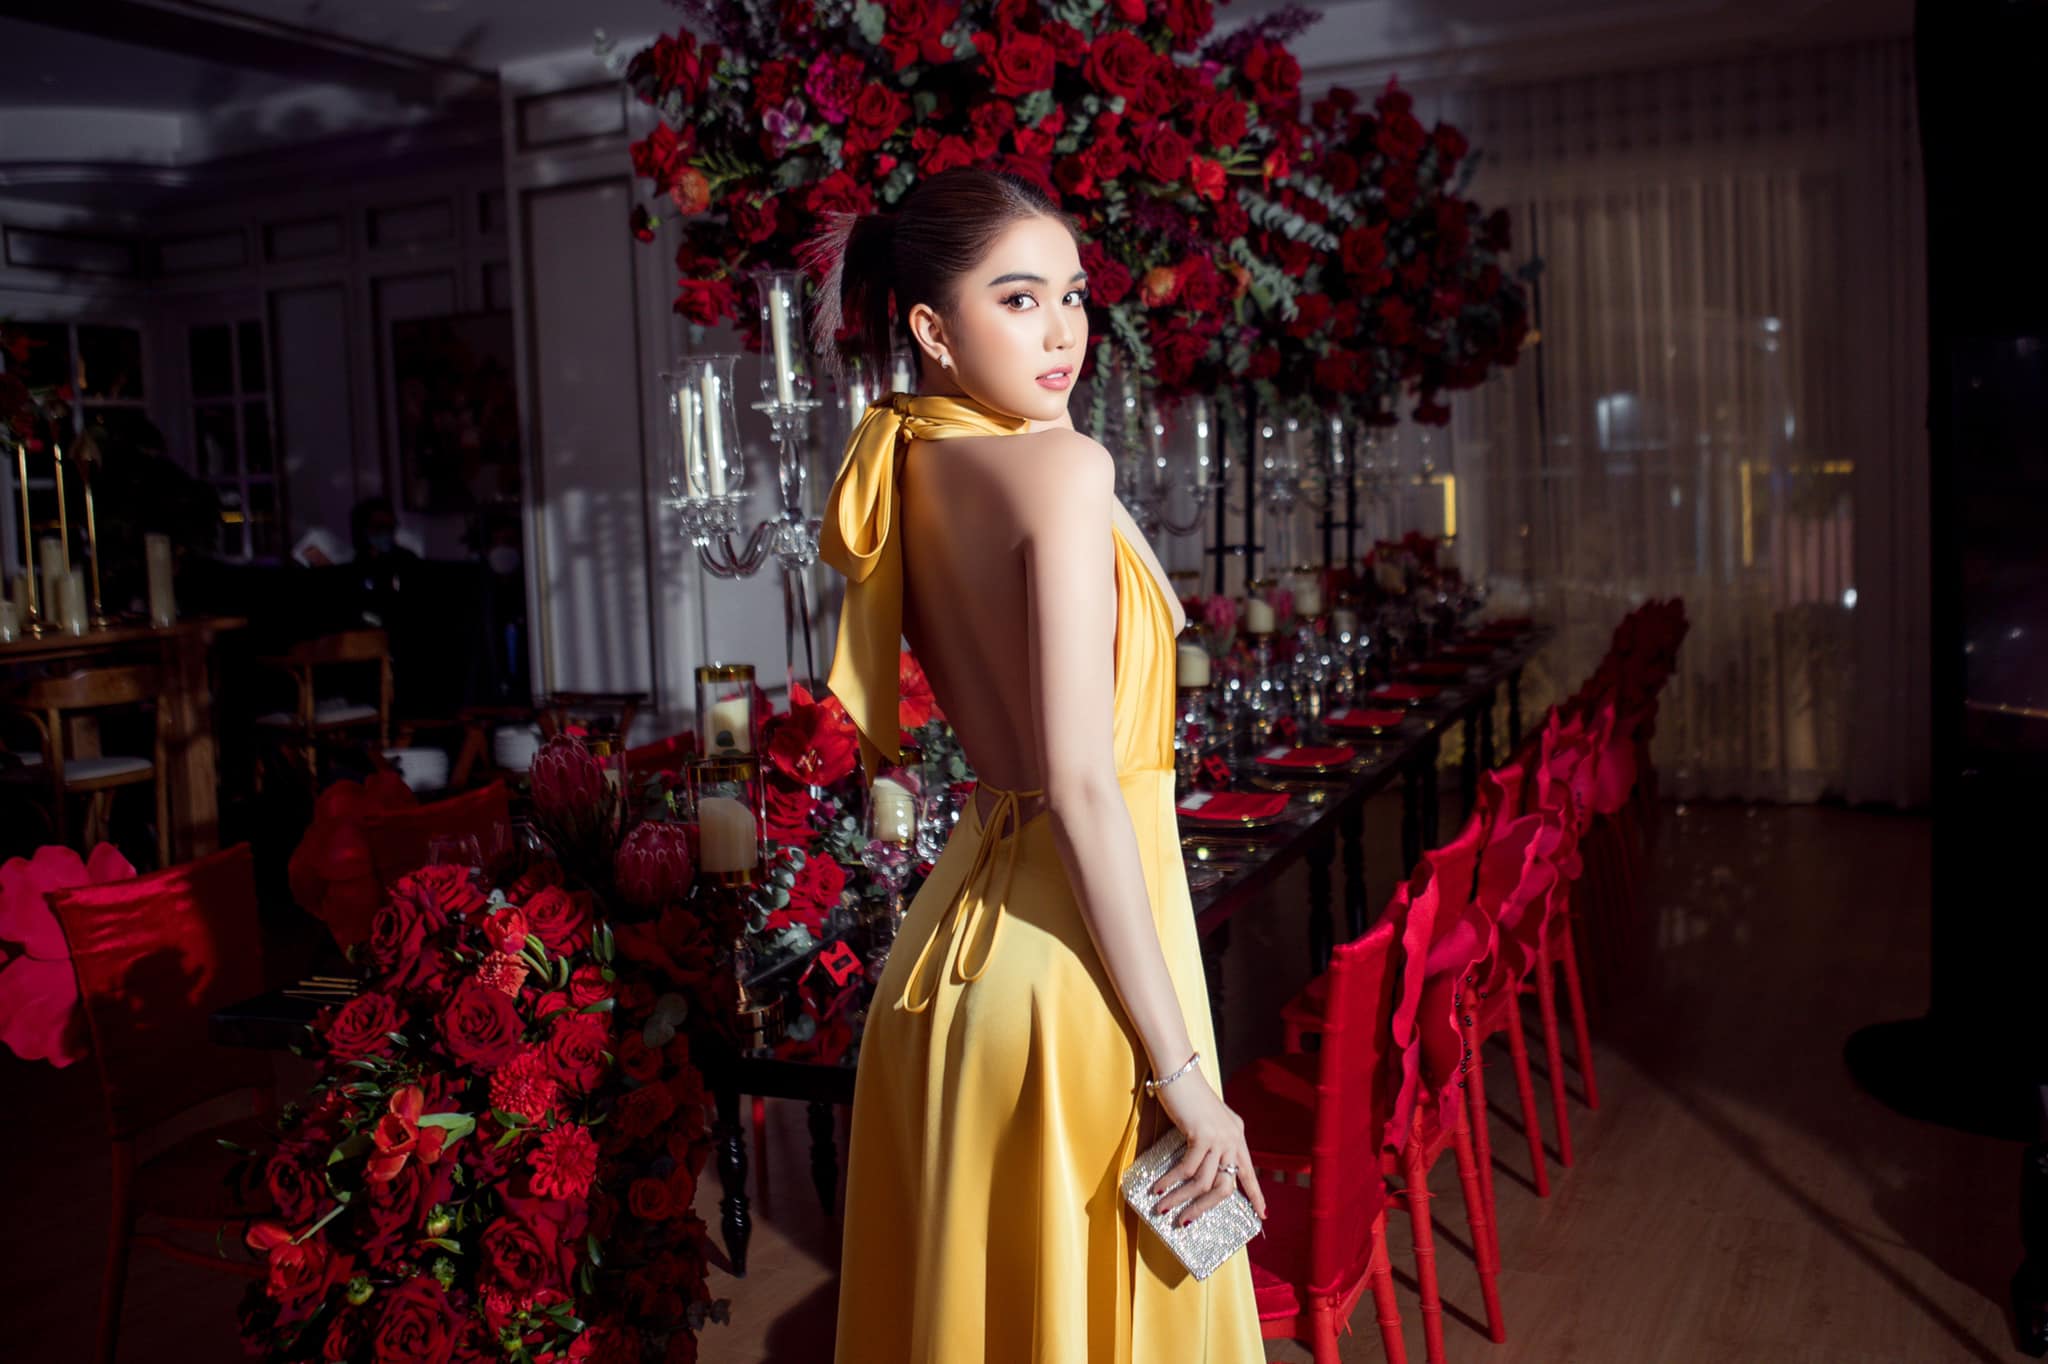 Trong bữa tiệc cuối năm tại biệt thự của Vũ Khắc Tiệp, Ngọc Trinh xuất hiện nổi bật với chiếc váy màu vàng rực rỡ. Thiết kế này được tạo nên bởi NTK Đỗ Long với chất liệu lụa, kiểu dáng mang đến cảm hứng như áo yếm của người phụ nữ Việt.